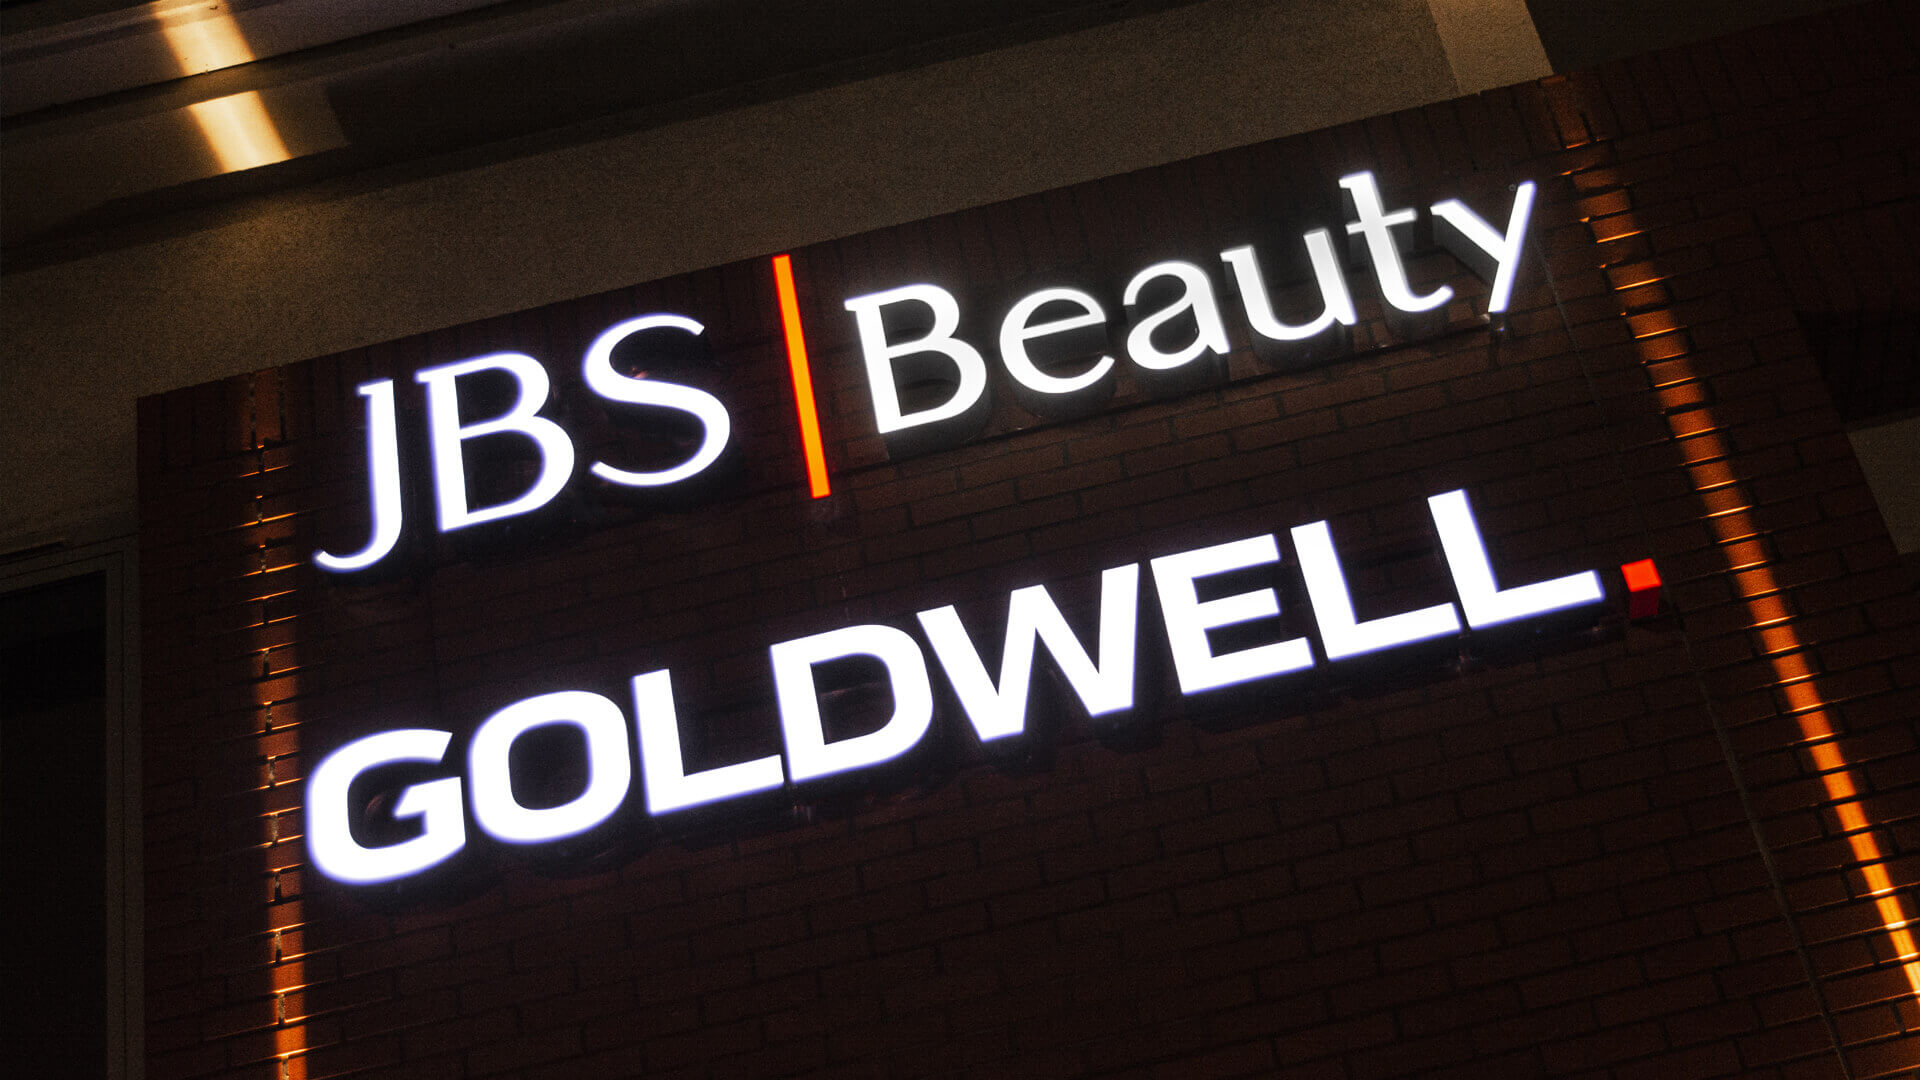 Goldwell  - jbs-goldwell-bauty-letter-colour-illuminée-enseignes-lettres-sur-le-mur-du-bâtiment-enseignes-lettres-sur-la-hauteur-du-belgique-enseignes-lettres-sur-le-bâtiment-bureau-gdansk-letnica (11) 